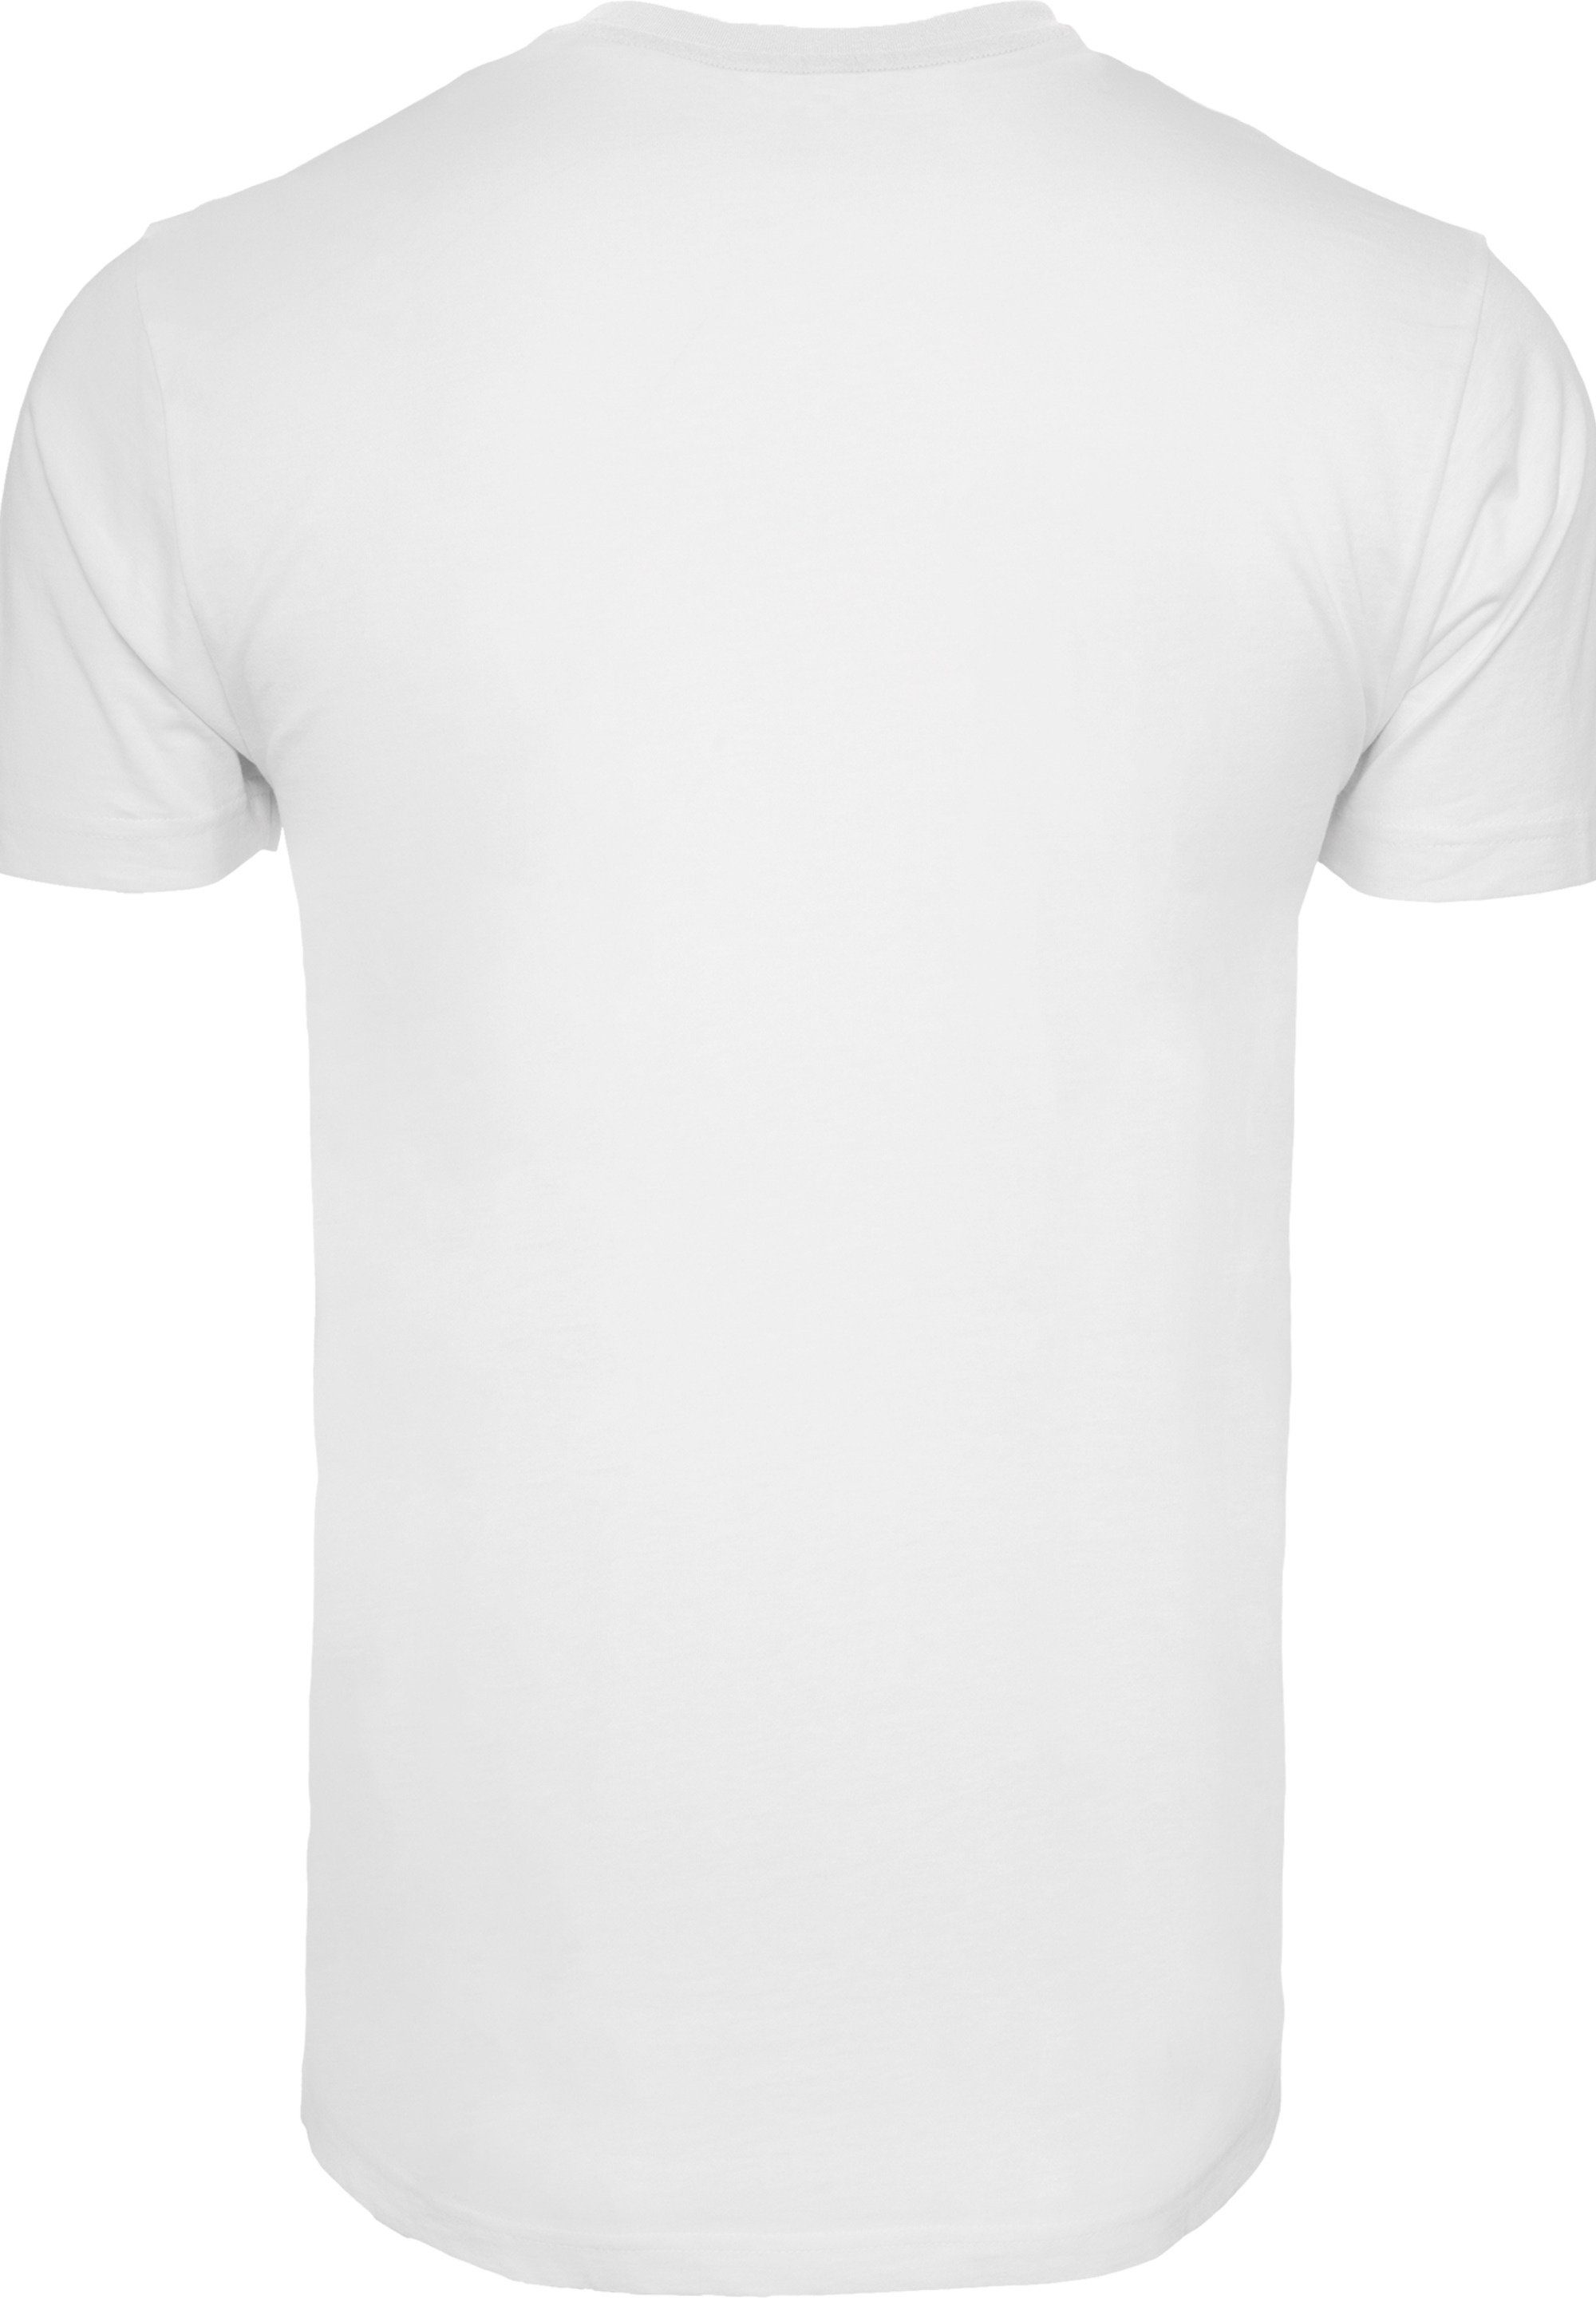 F4NT4STIC T-Shirt Woodstock Brust Print Logo weiß